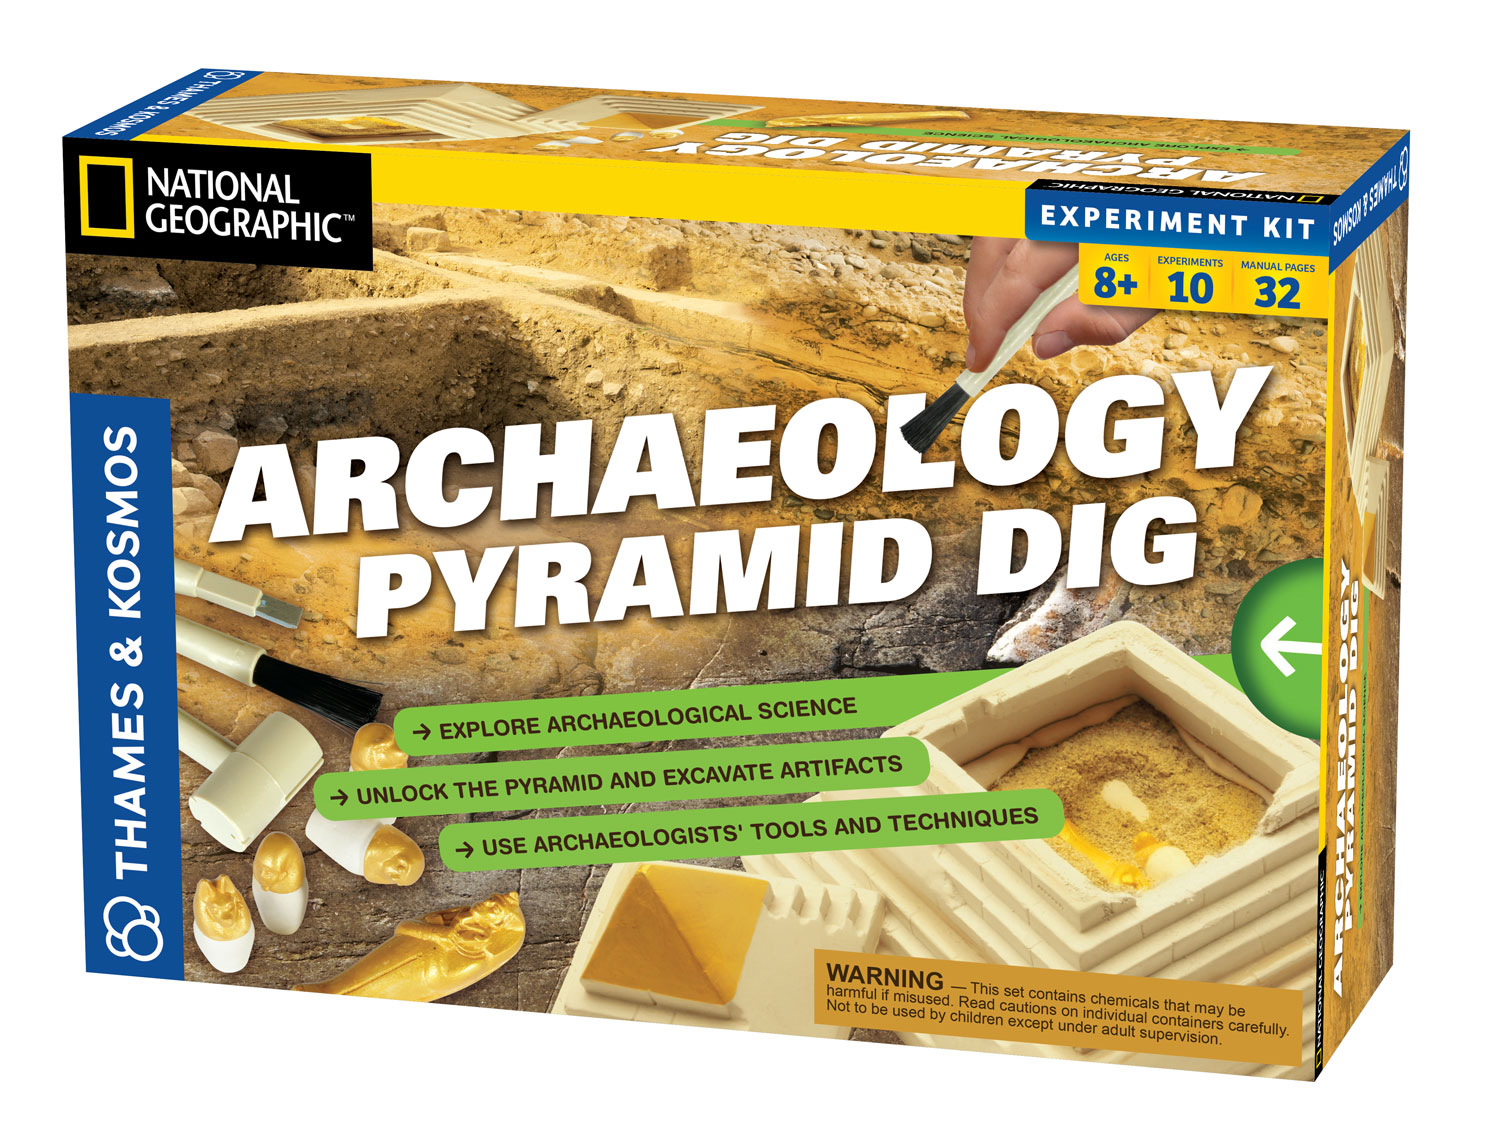 Archeológ v Egypte